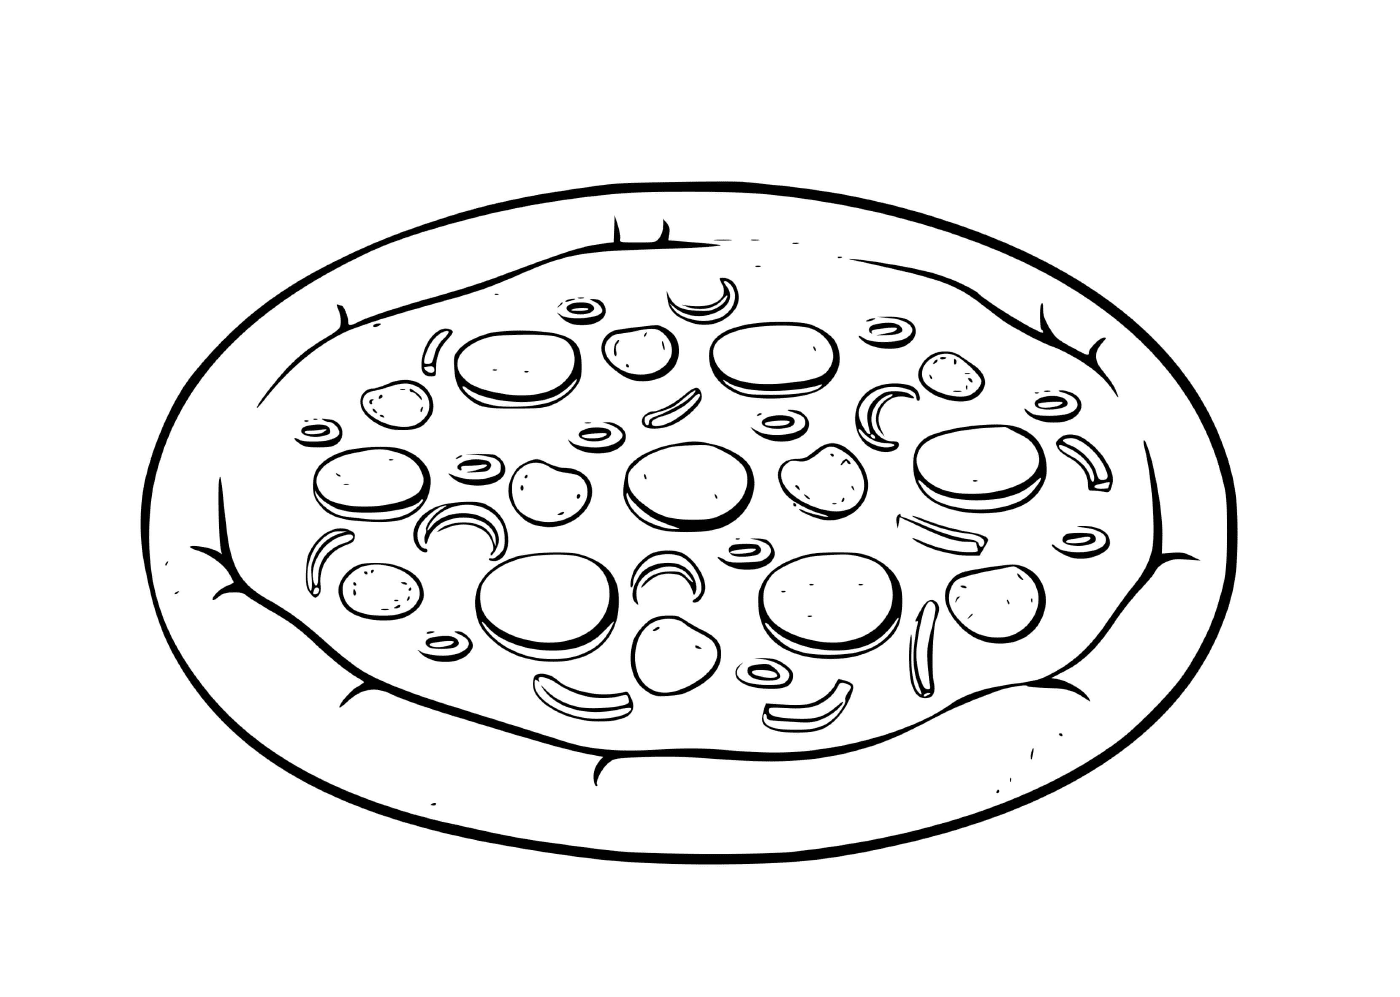  Une pizza grecque